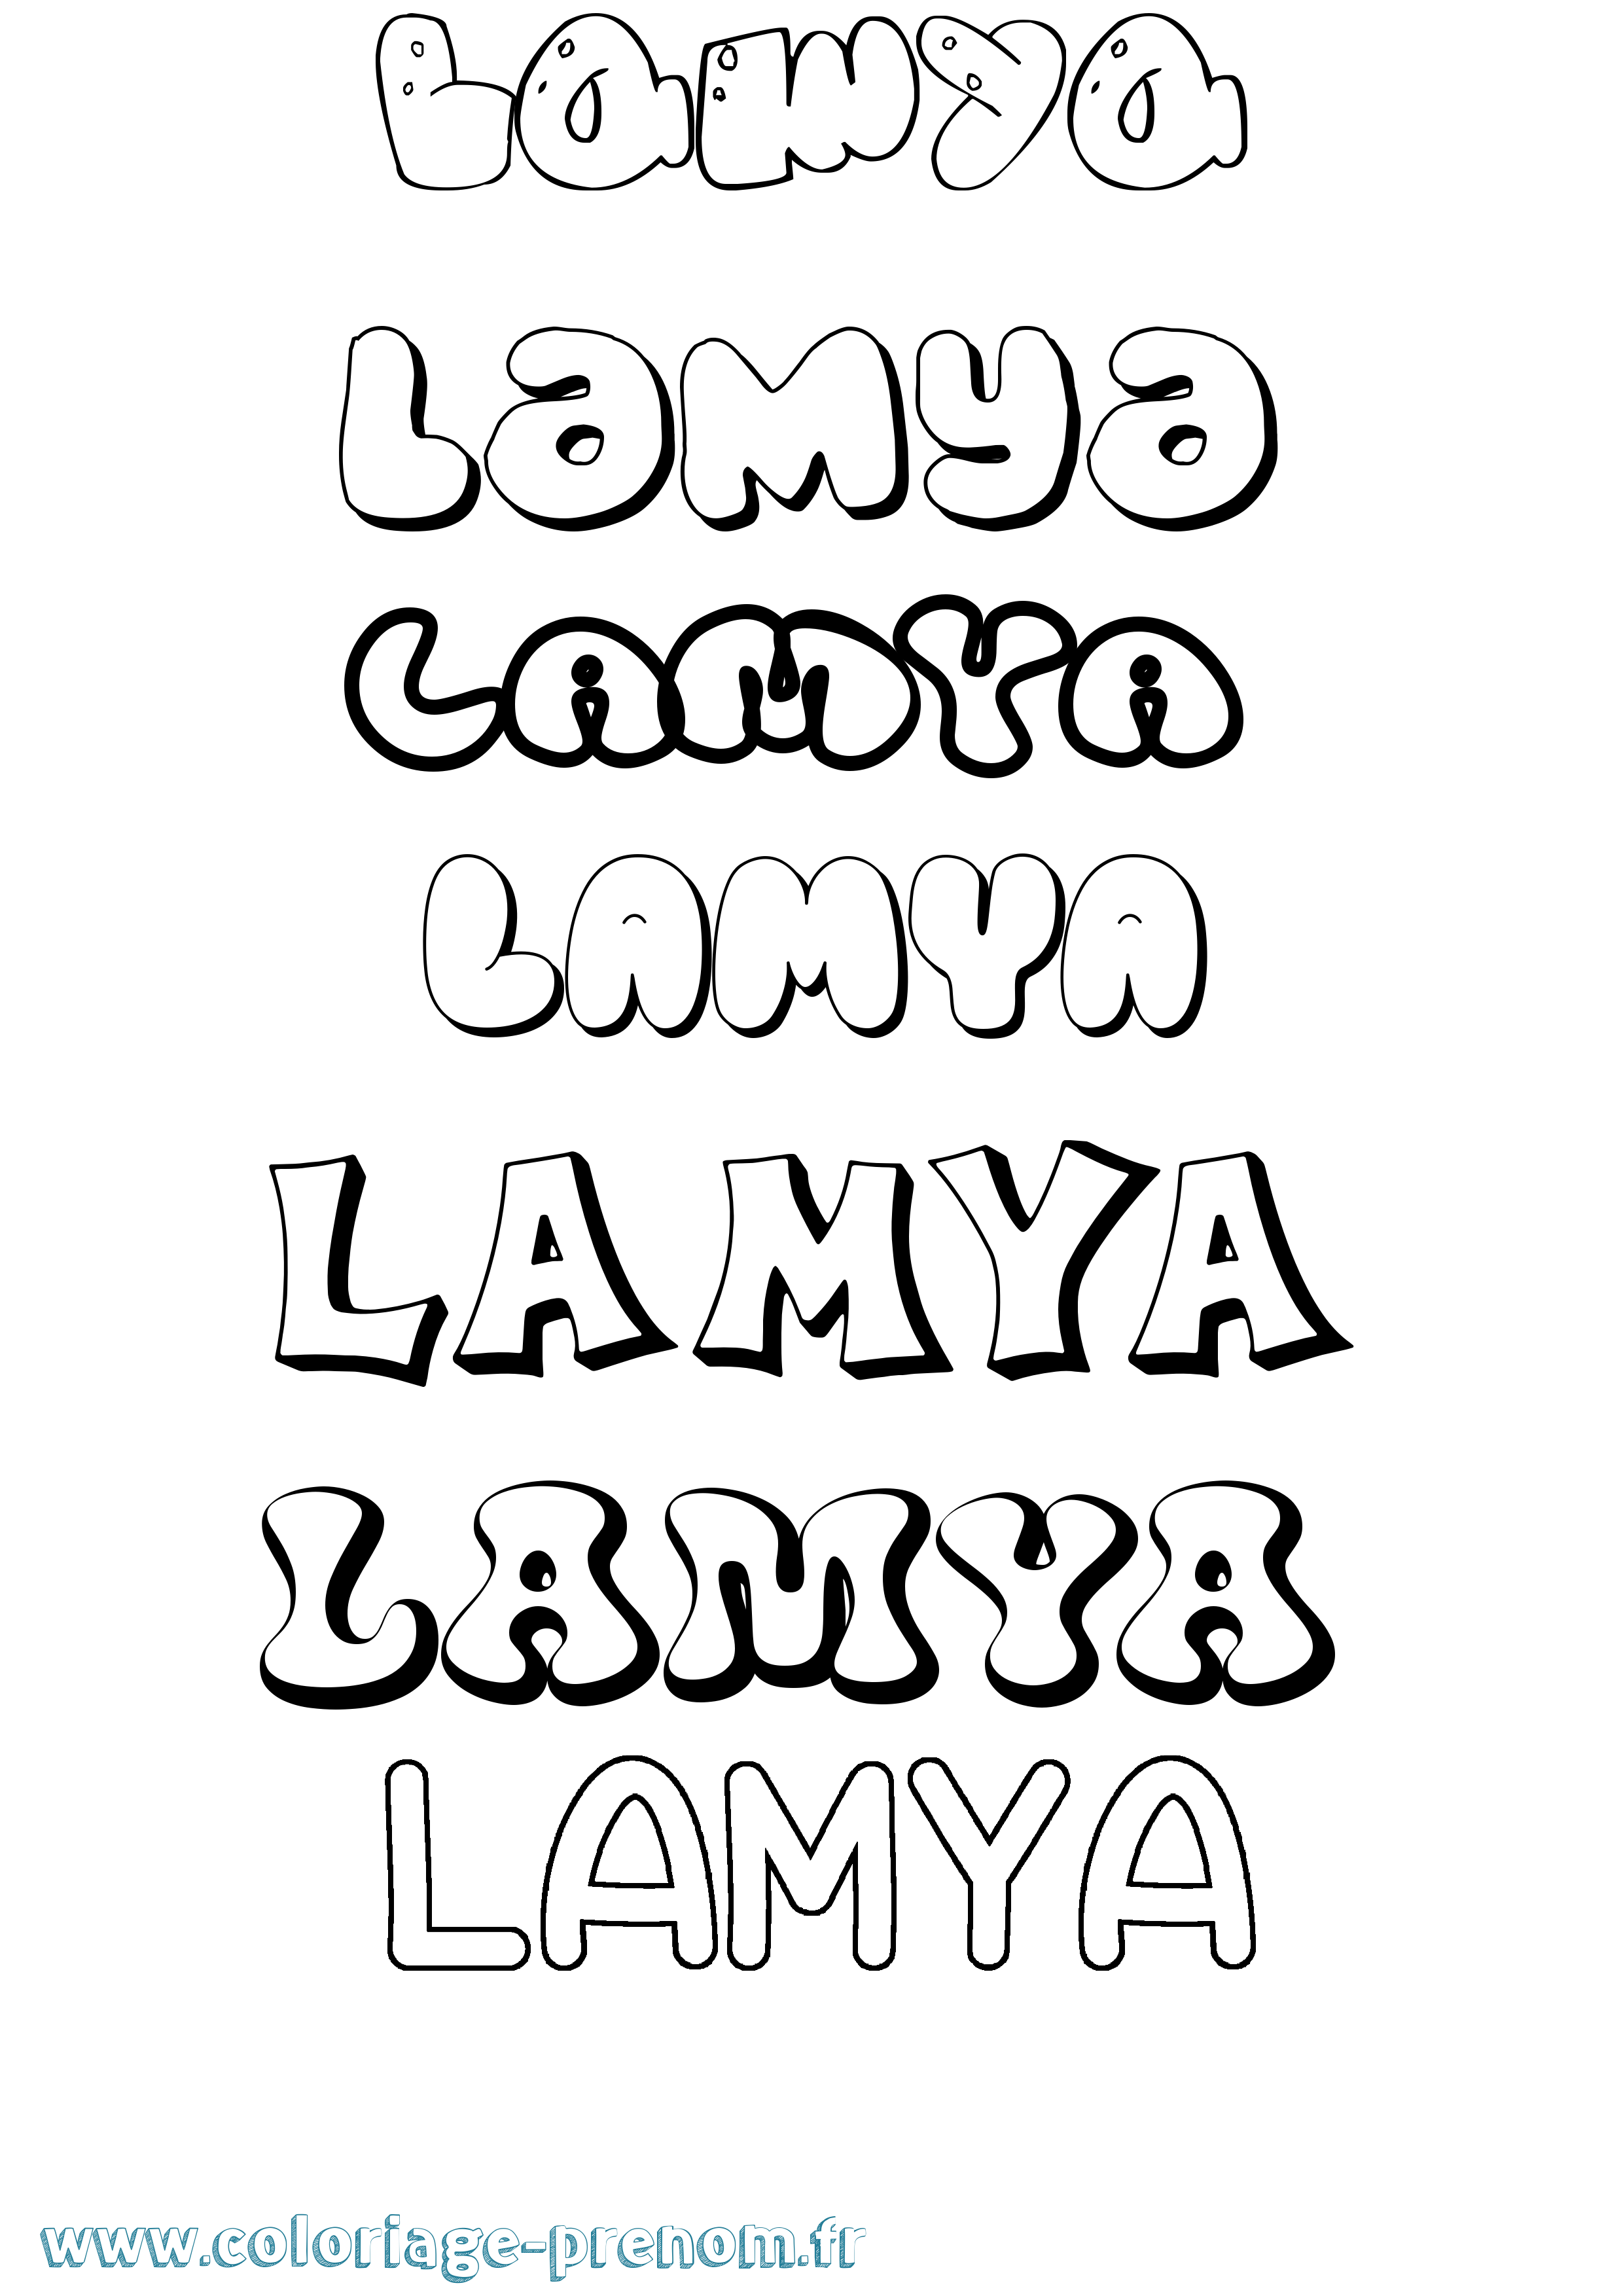 Coloriage prénom Lamya Bubble